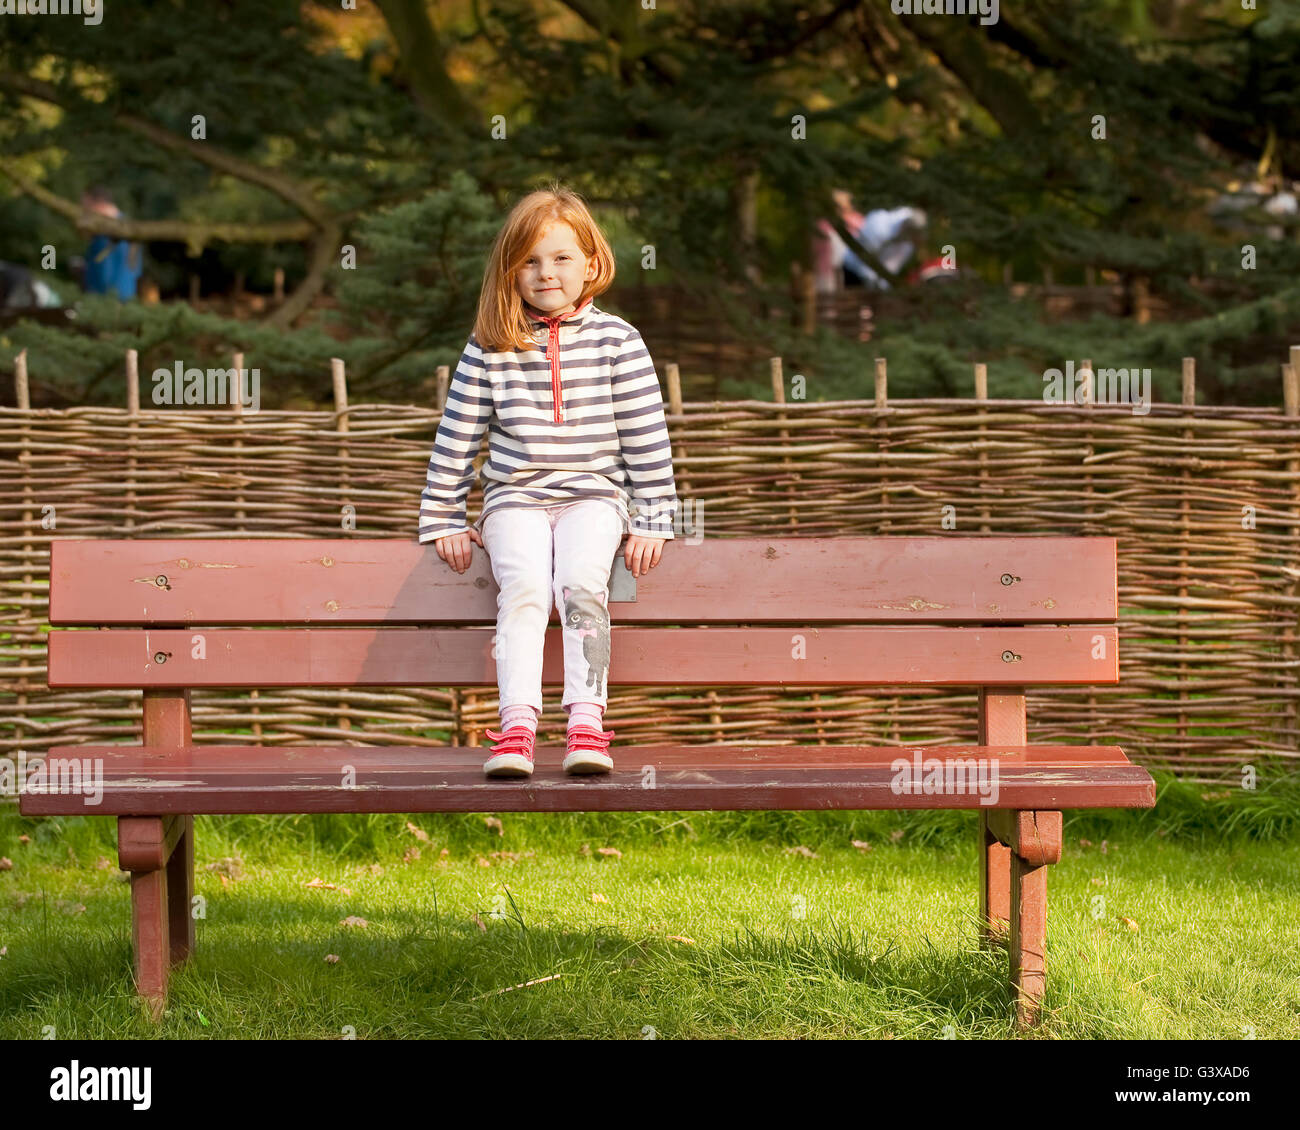 Seduta su una panchina. Una giovane ragazza con i capelli rossi si trova sul retro di una panchina nel parco di fronte alla telecamera. Foto Stock